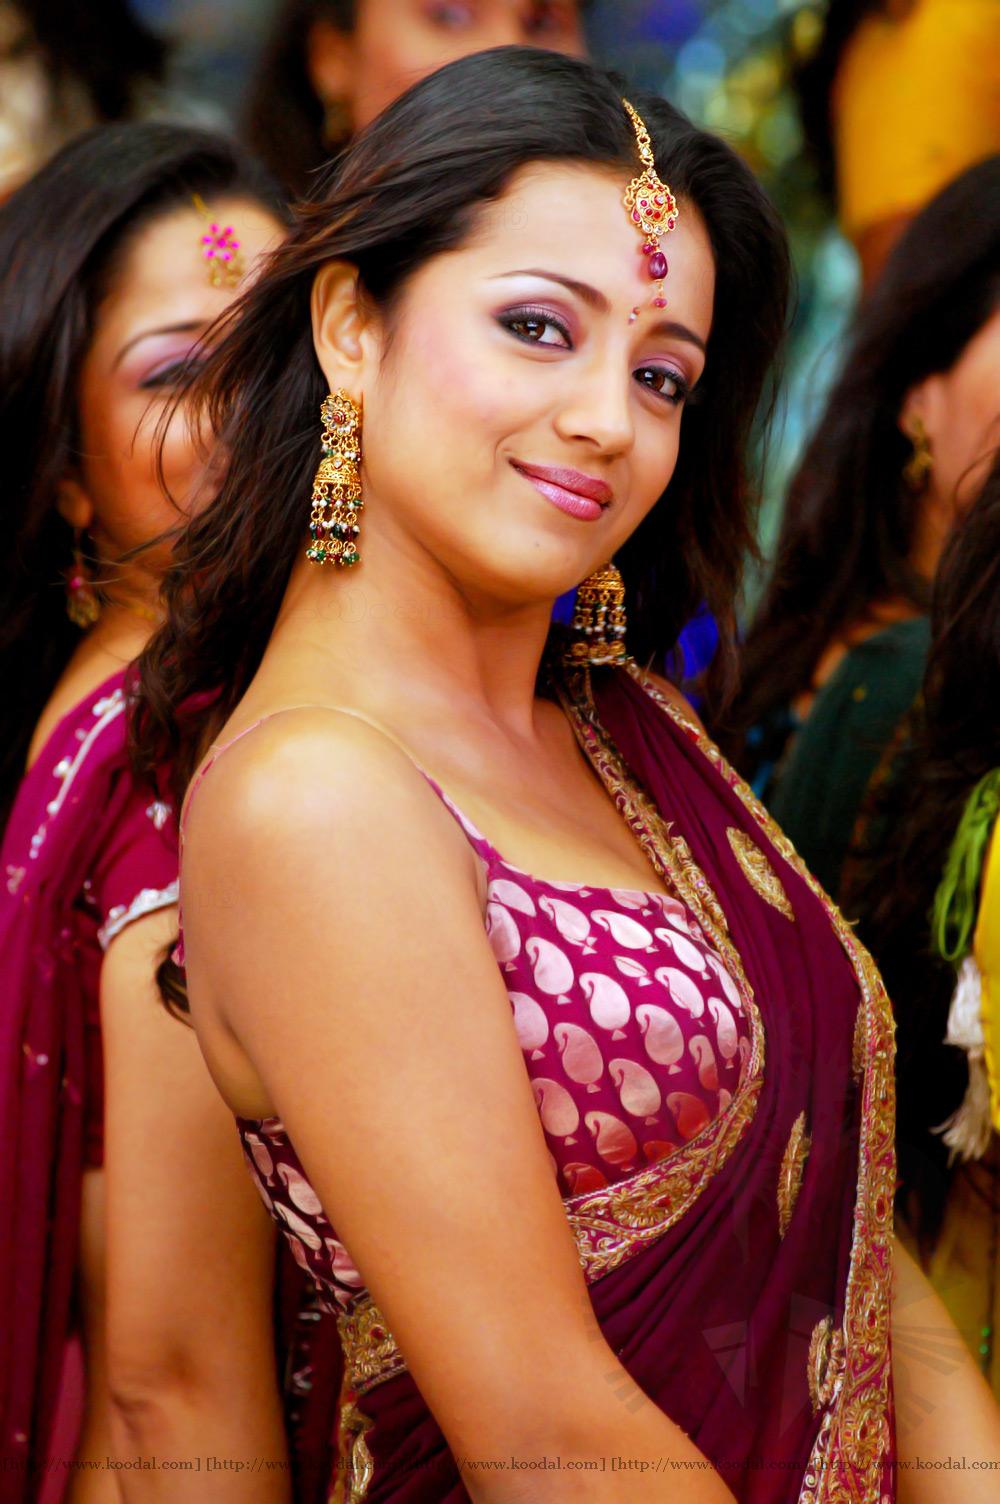 Trisha Tamil Actress|Tamil Actress Trisha - South Indian Actress Model